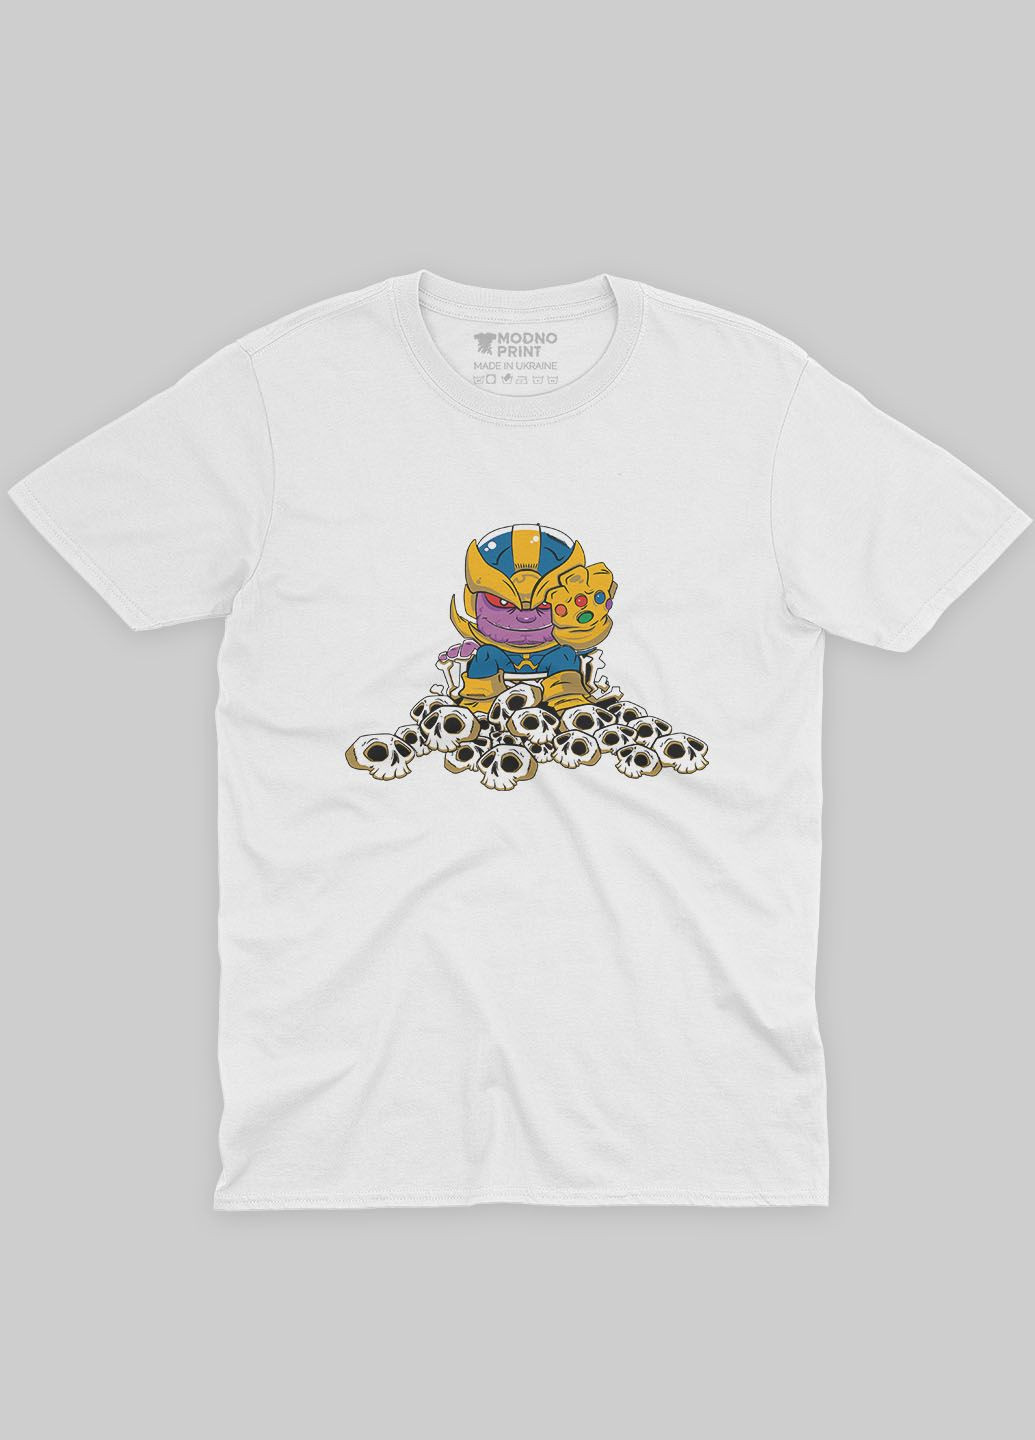 Белая мужская футболка с принтом супезлоды - танос (ts001-1-whi-006-019-004) Modno